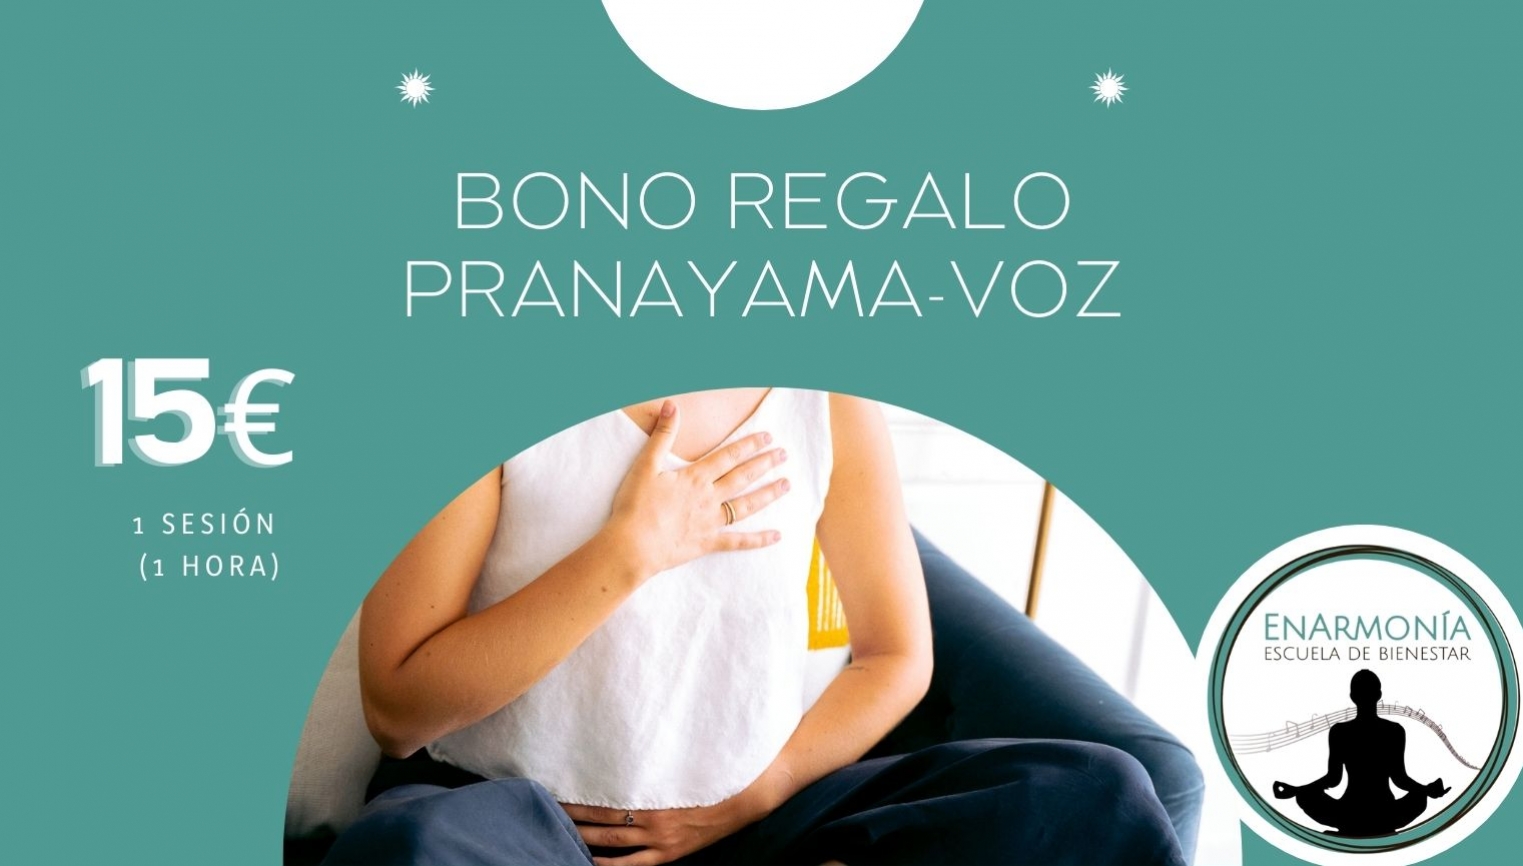 Bono Regalo Pranayama-Voz - foto 1/1